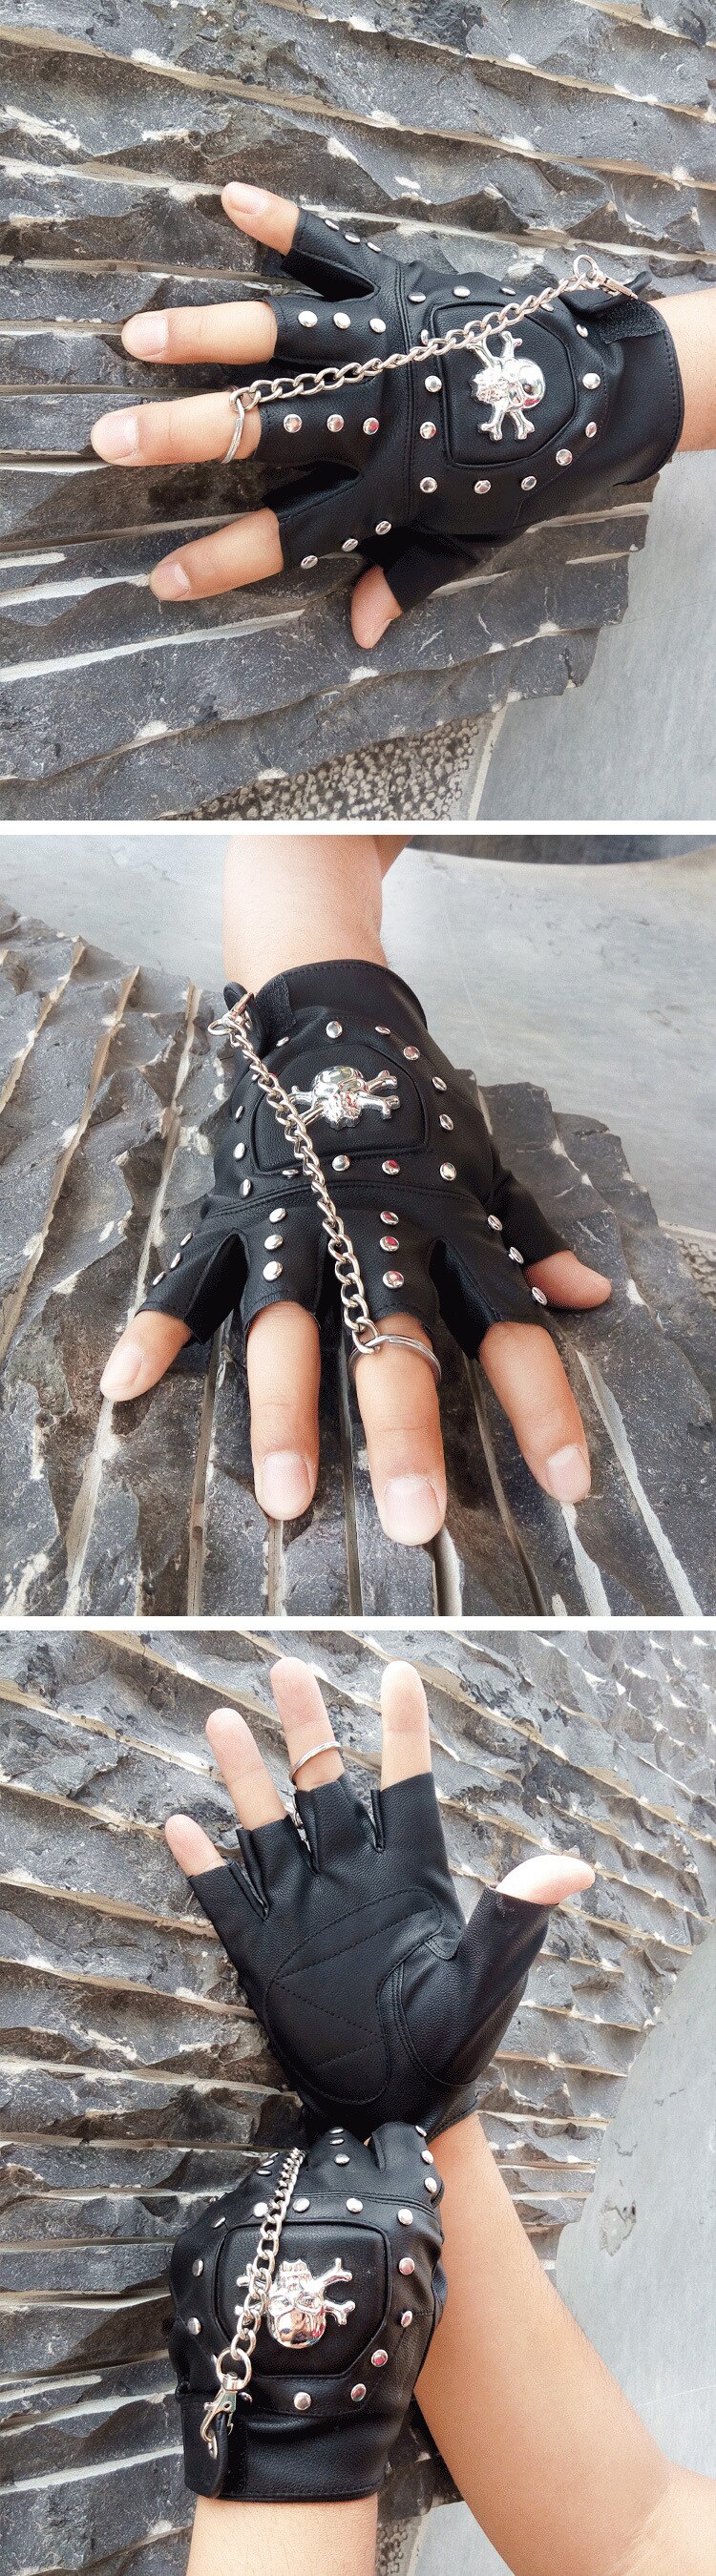 Schedels Klinknagel Pu Lederen Vingerloze Handschoenen Mannen Vrouwen Mode Hip Hop Vrouwen Keten Punk Handschoenen Half Vinger Mannen &#39;S Handschoenen